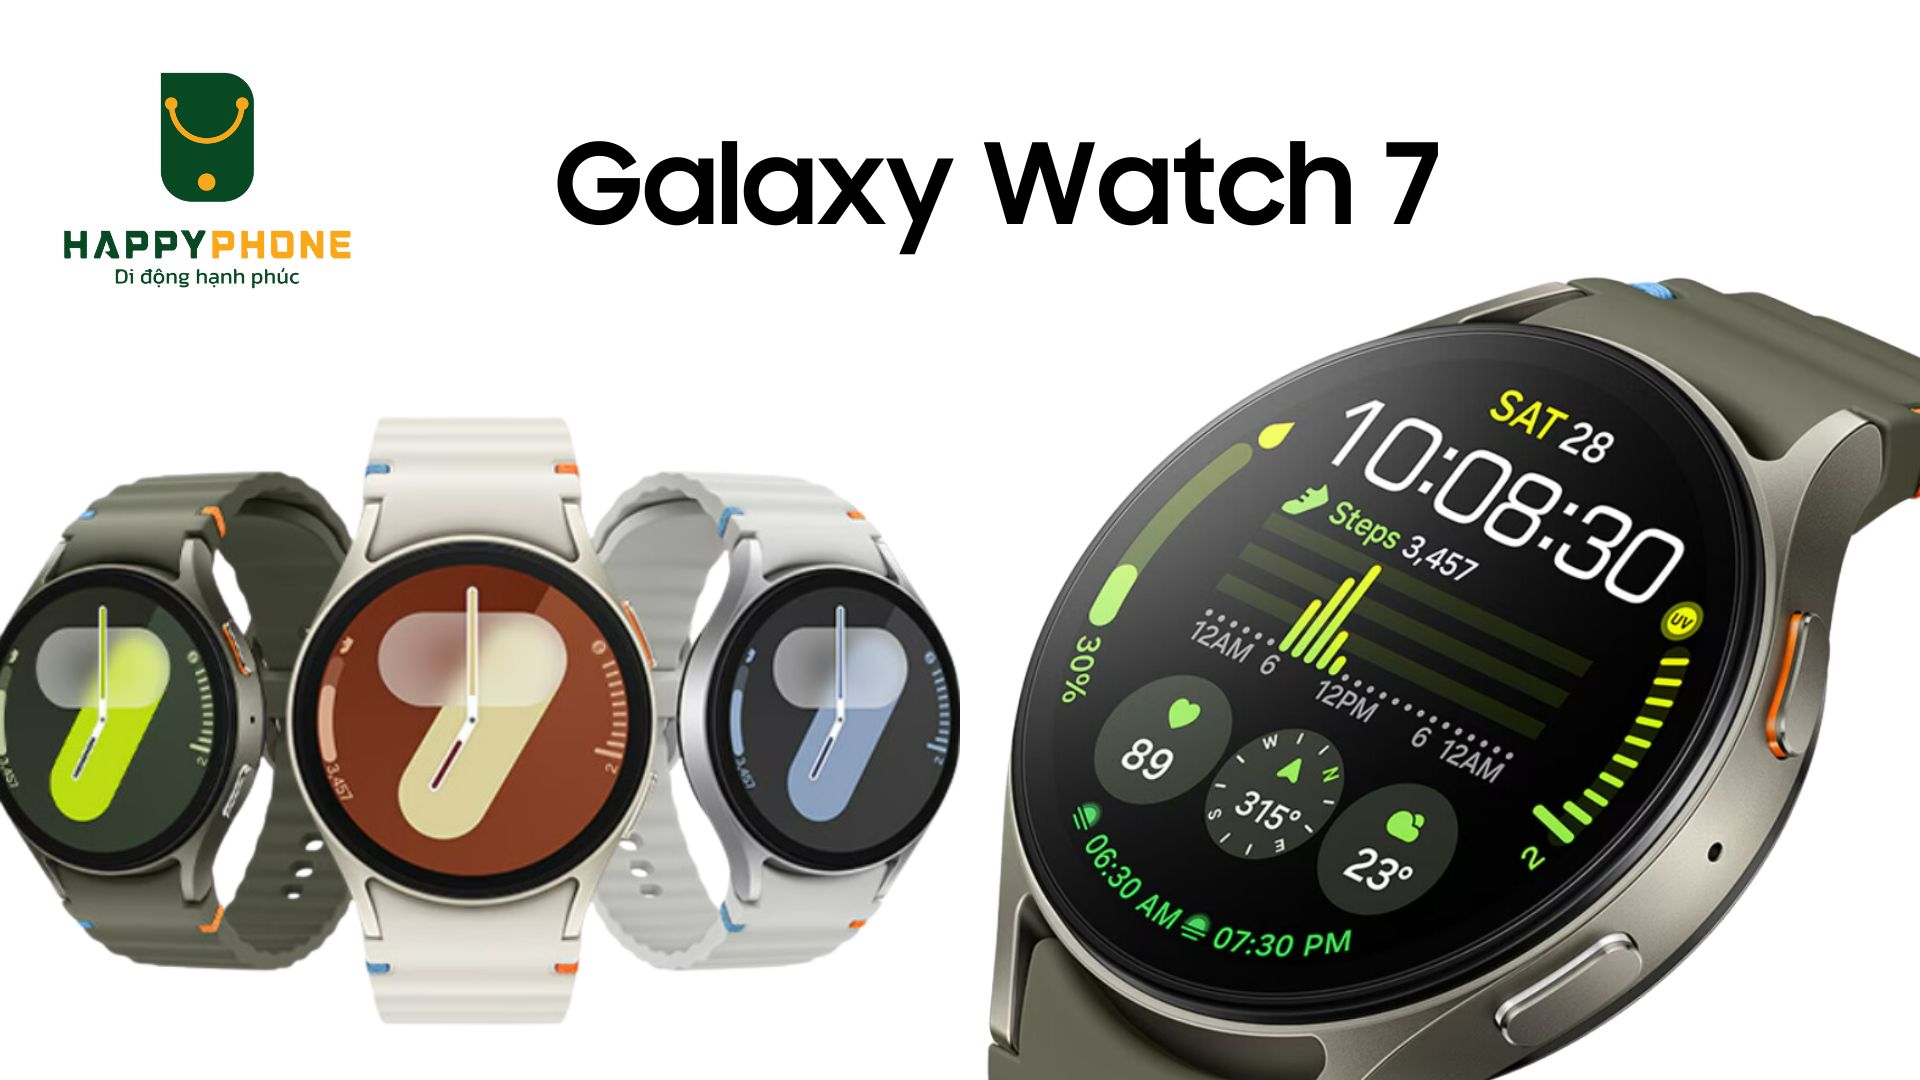 Galaxy Watch 7 chính thức ra mắt